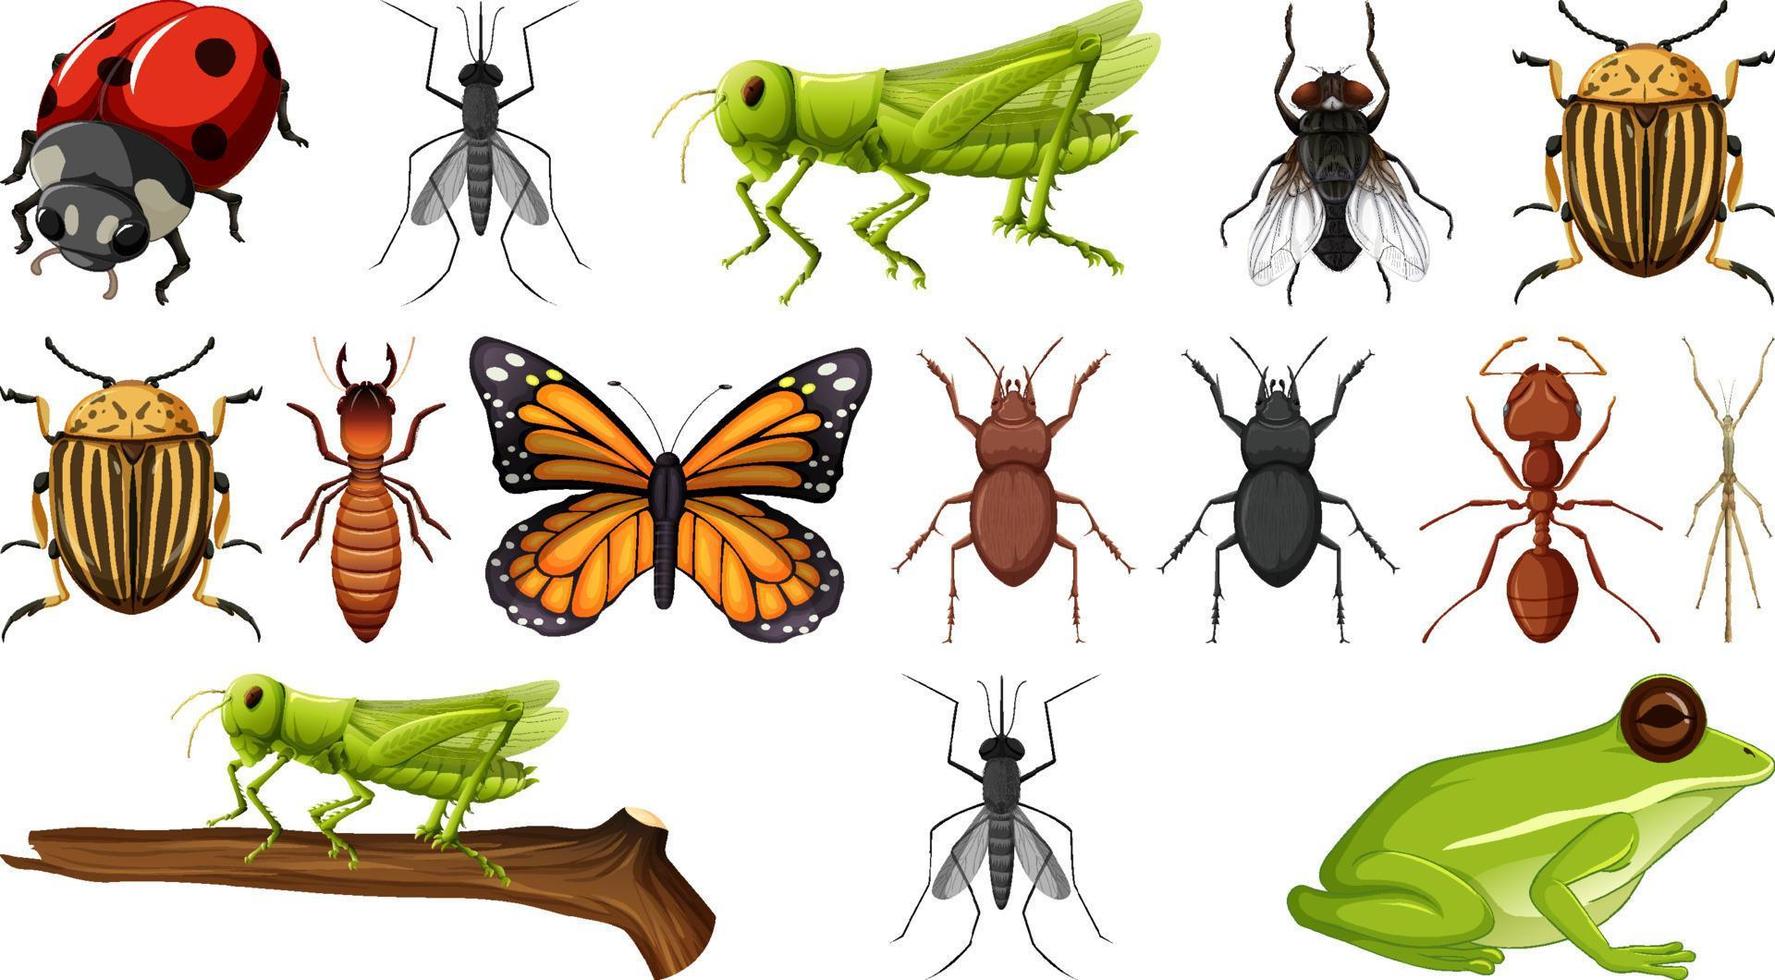 verschillende insecten collectie geïsoleerd op een witte achtergrond vector